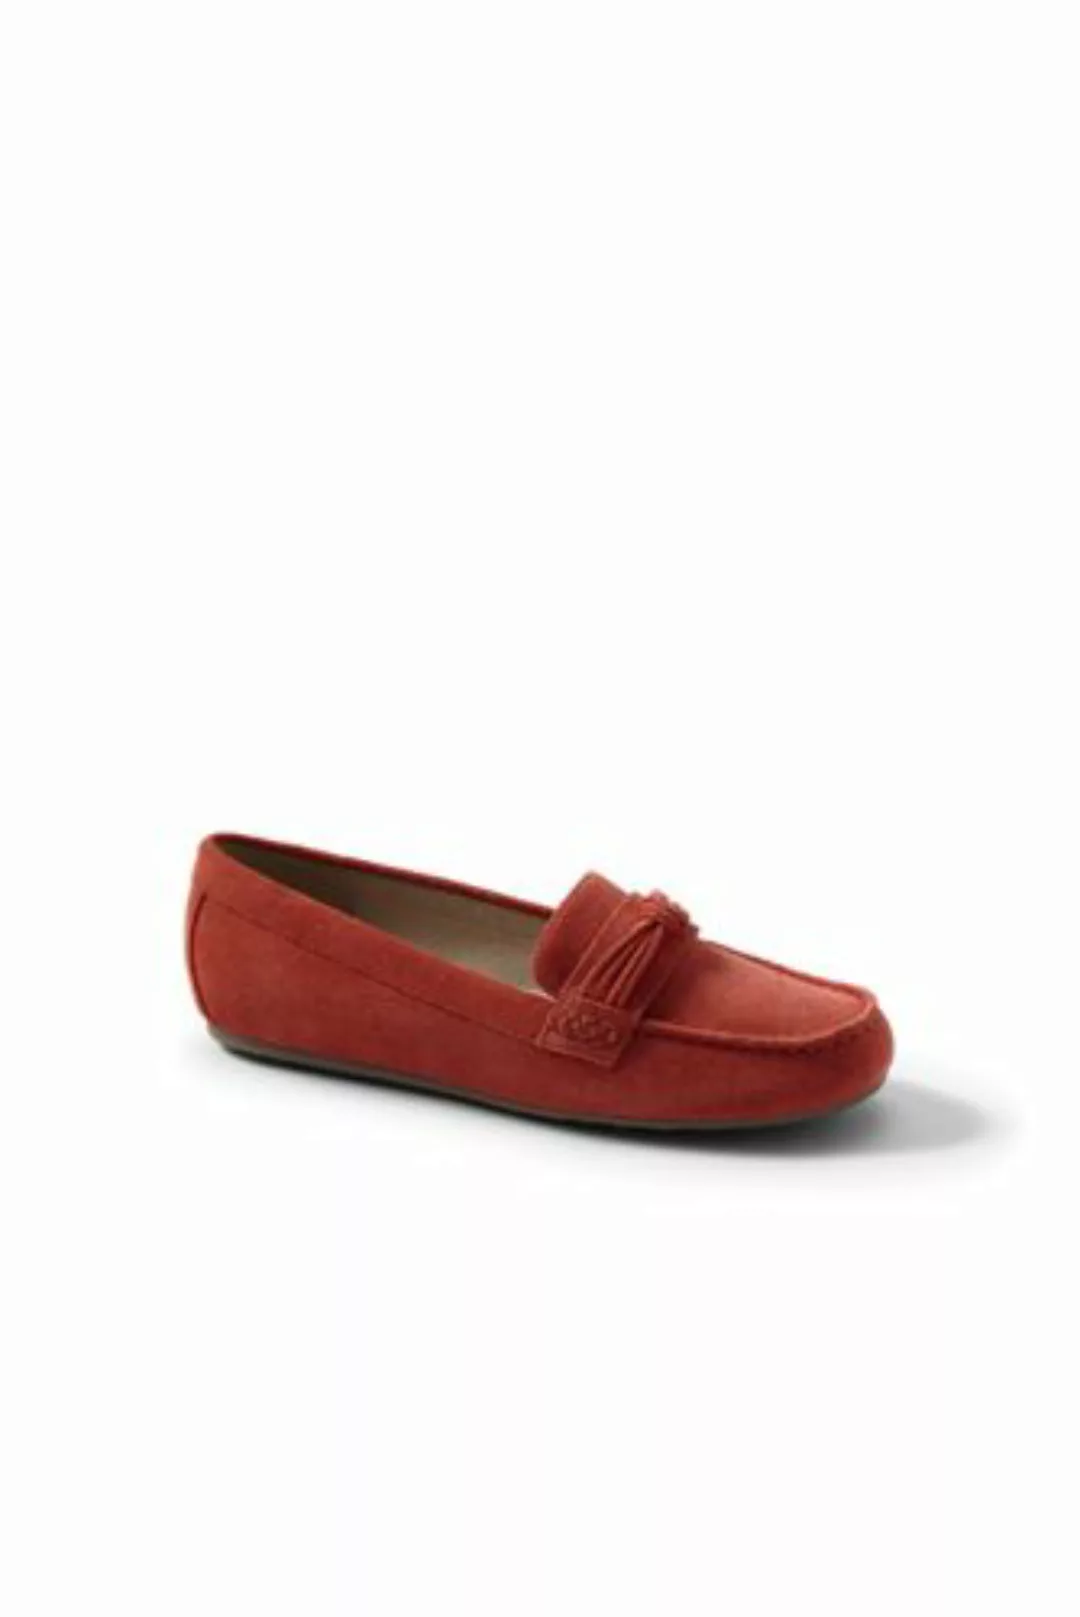 Komfort-Pennyloafer mit Knotendetail, Damen, Größe: 36 Weit, Rot, Leder, by günstig online kaufen